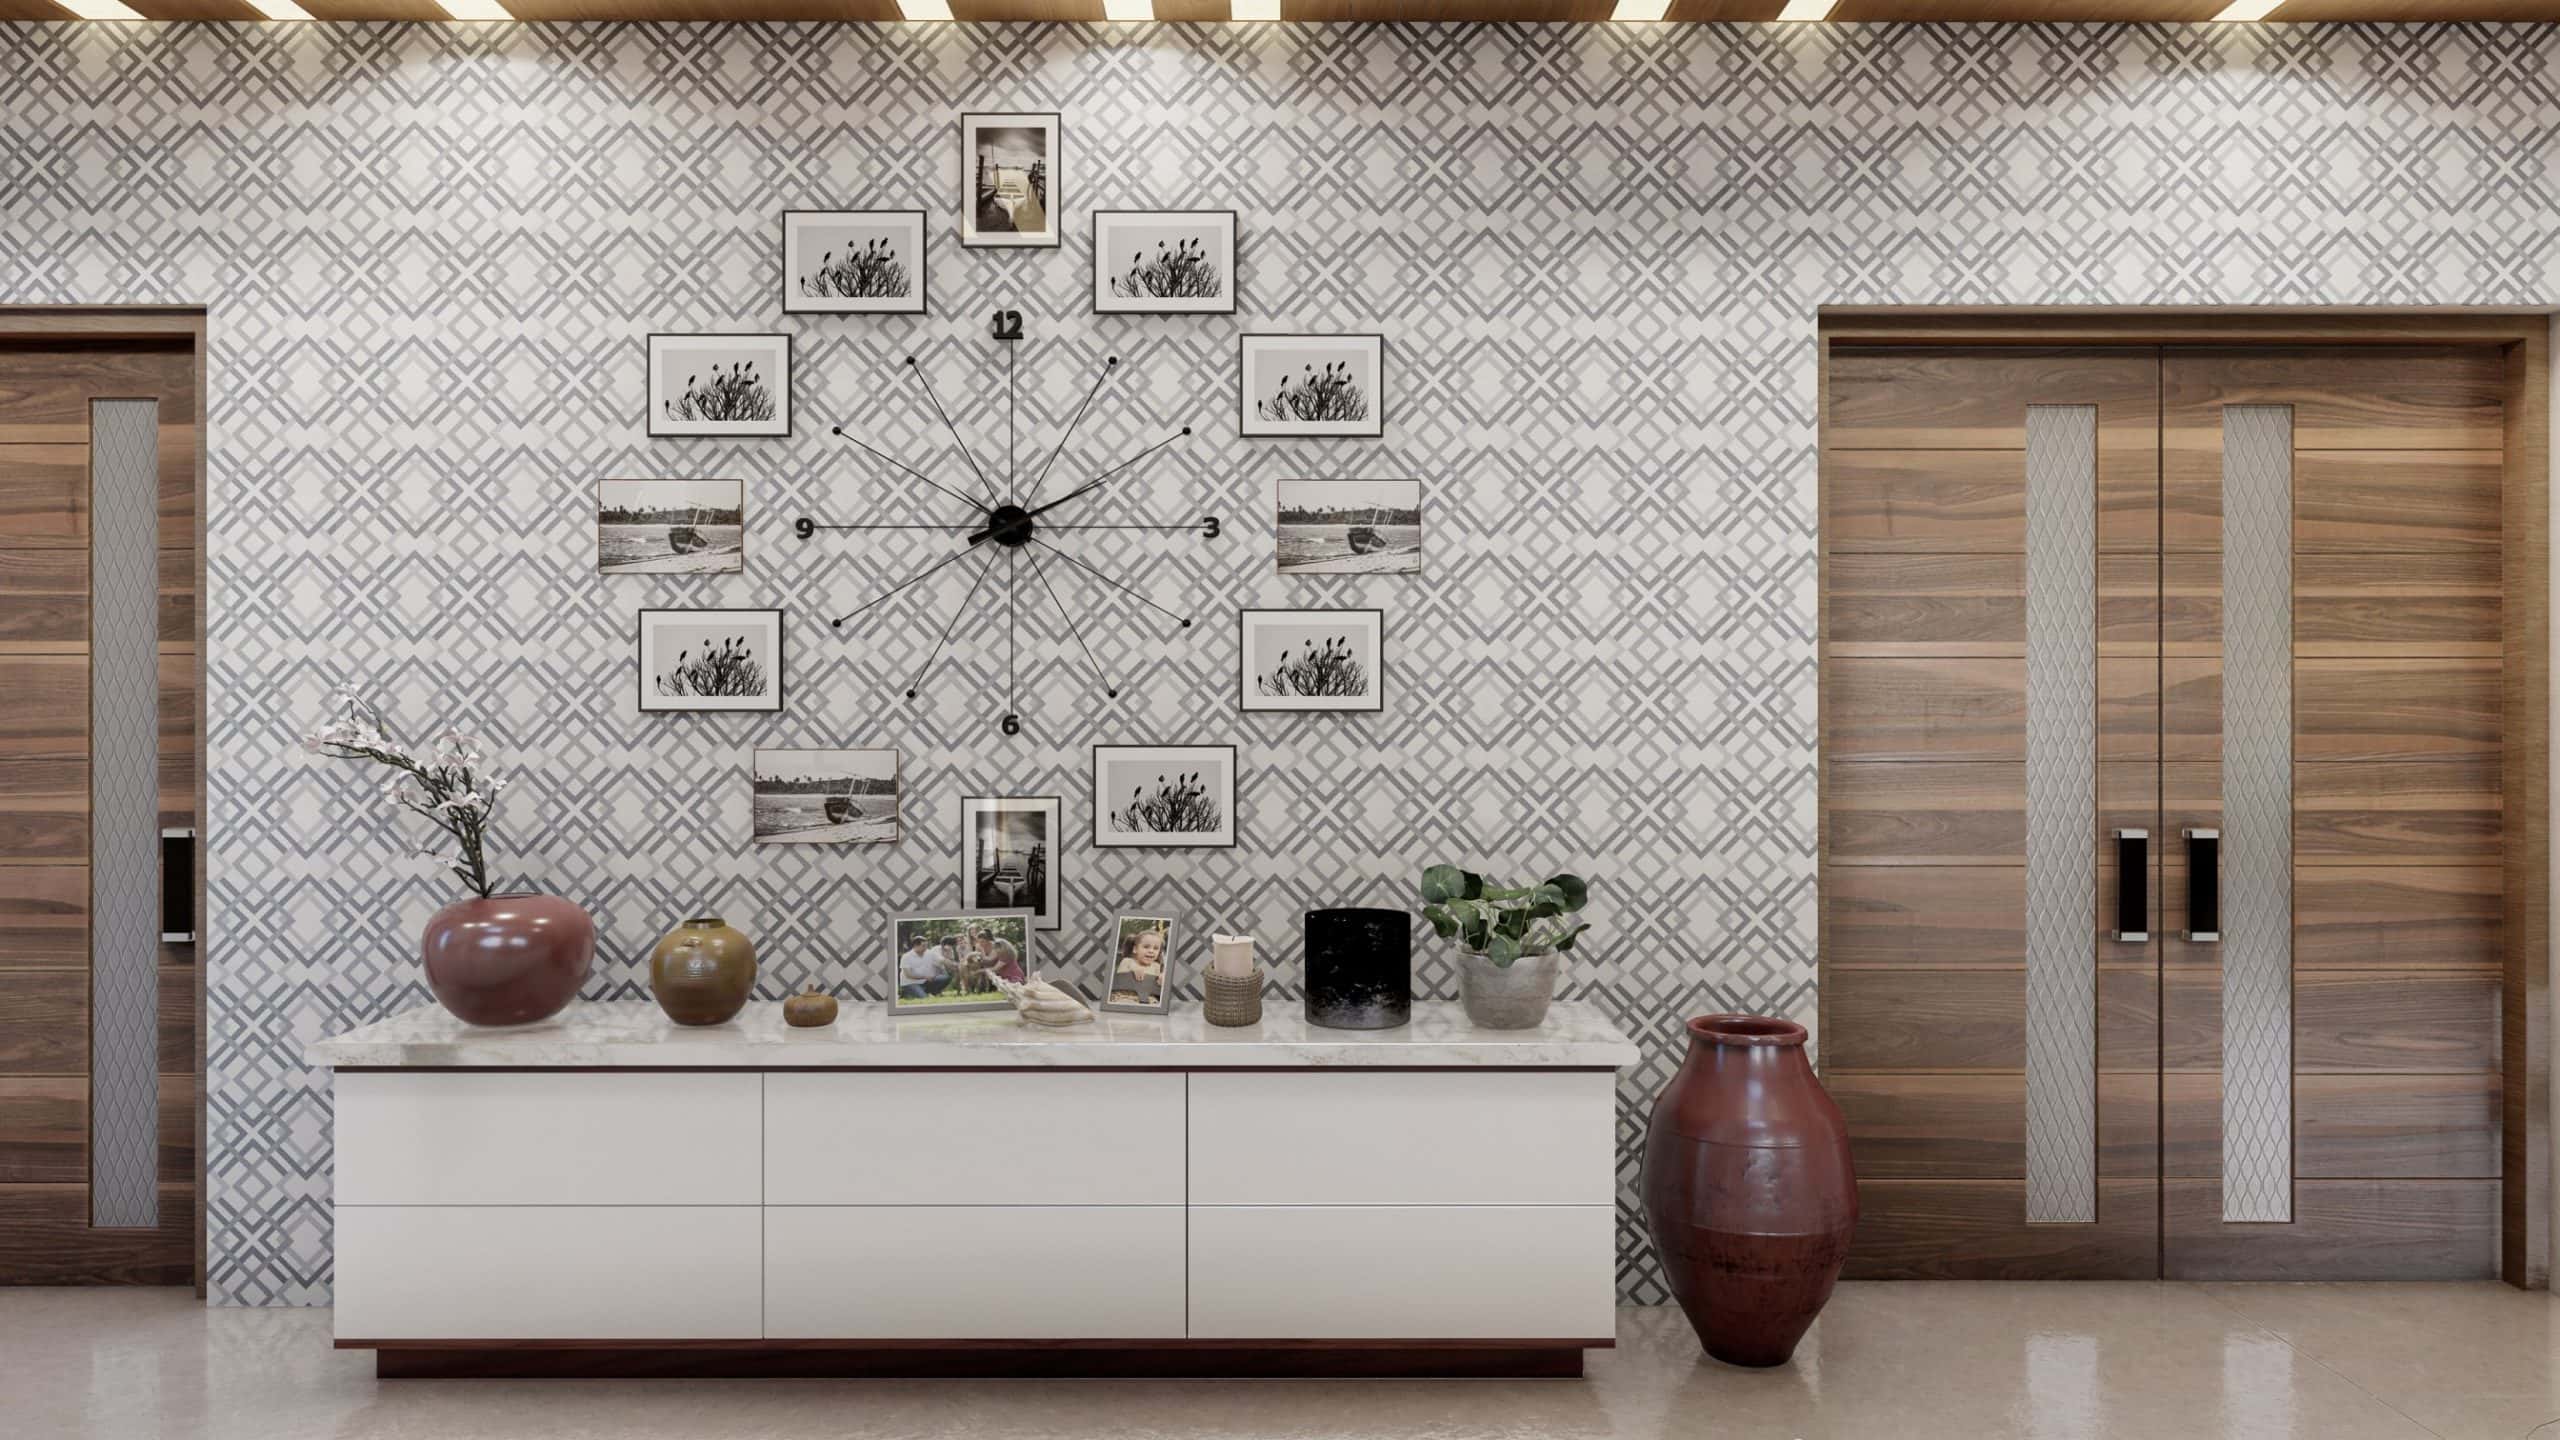 Drawing Room Wall Design Ideas For Your Home | Design Cafe-saigonsouth.com.vn